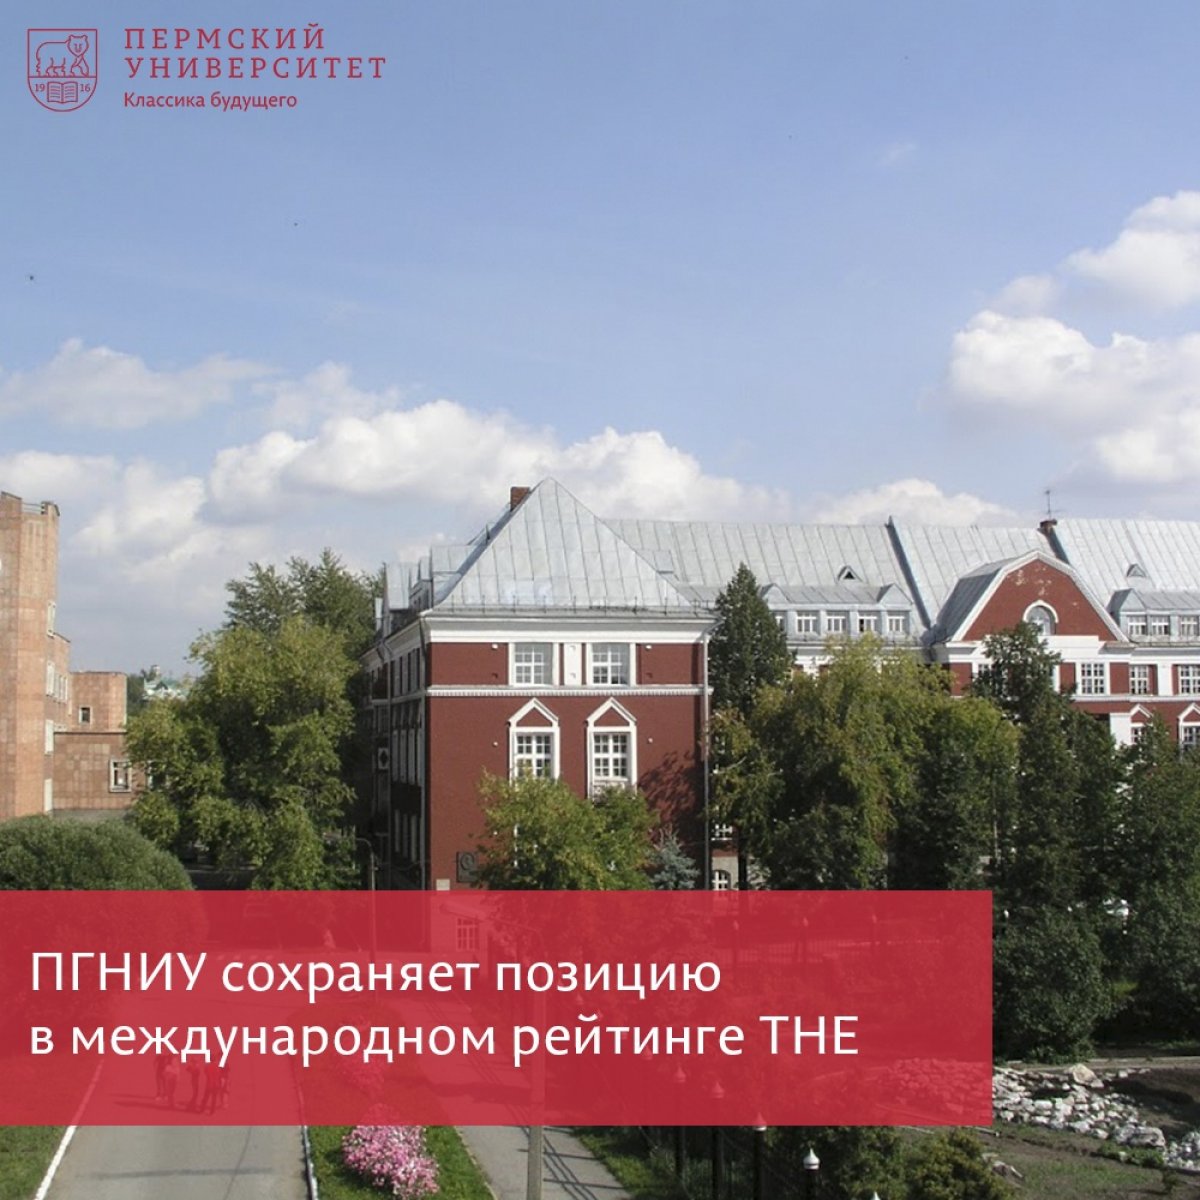 Пермский университет сохранил позицию в международном рейтинге THE